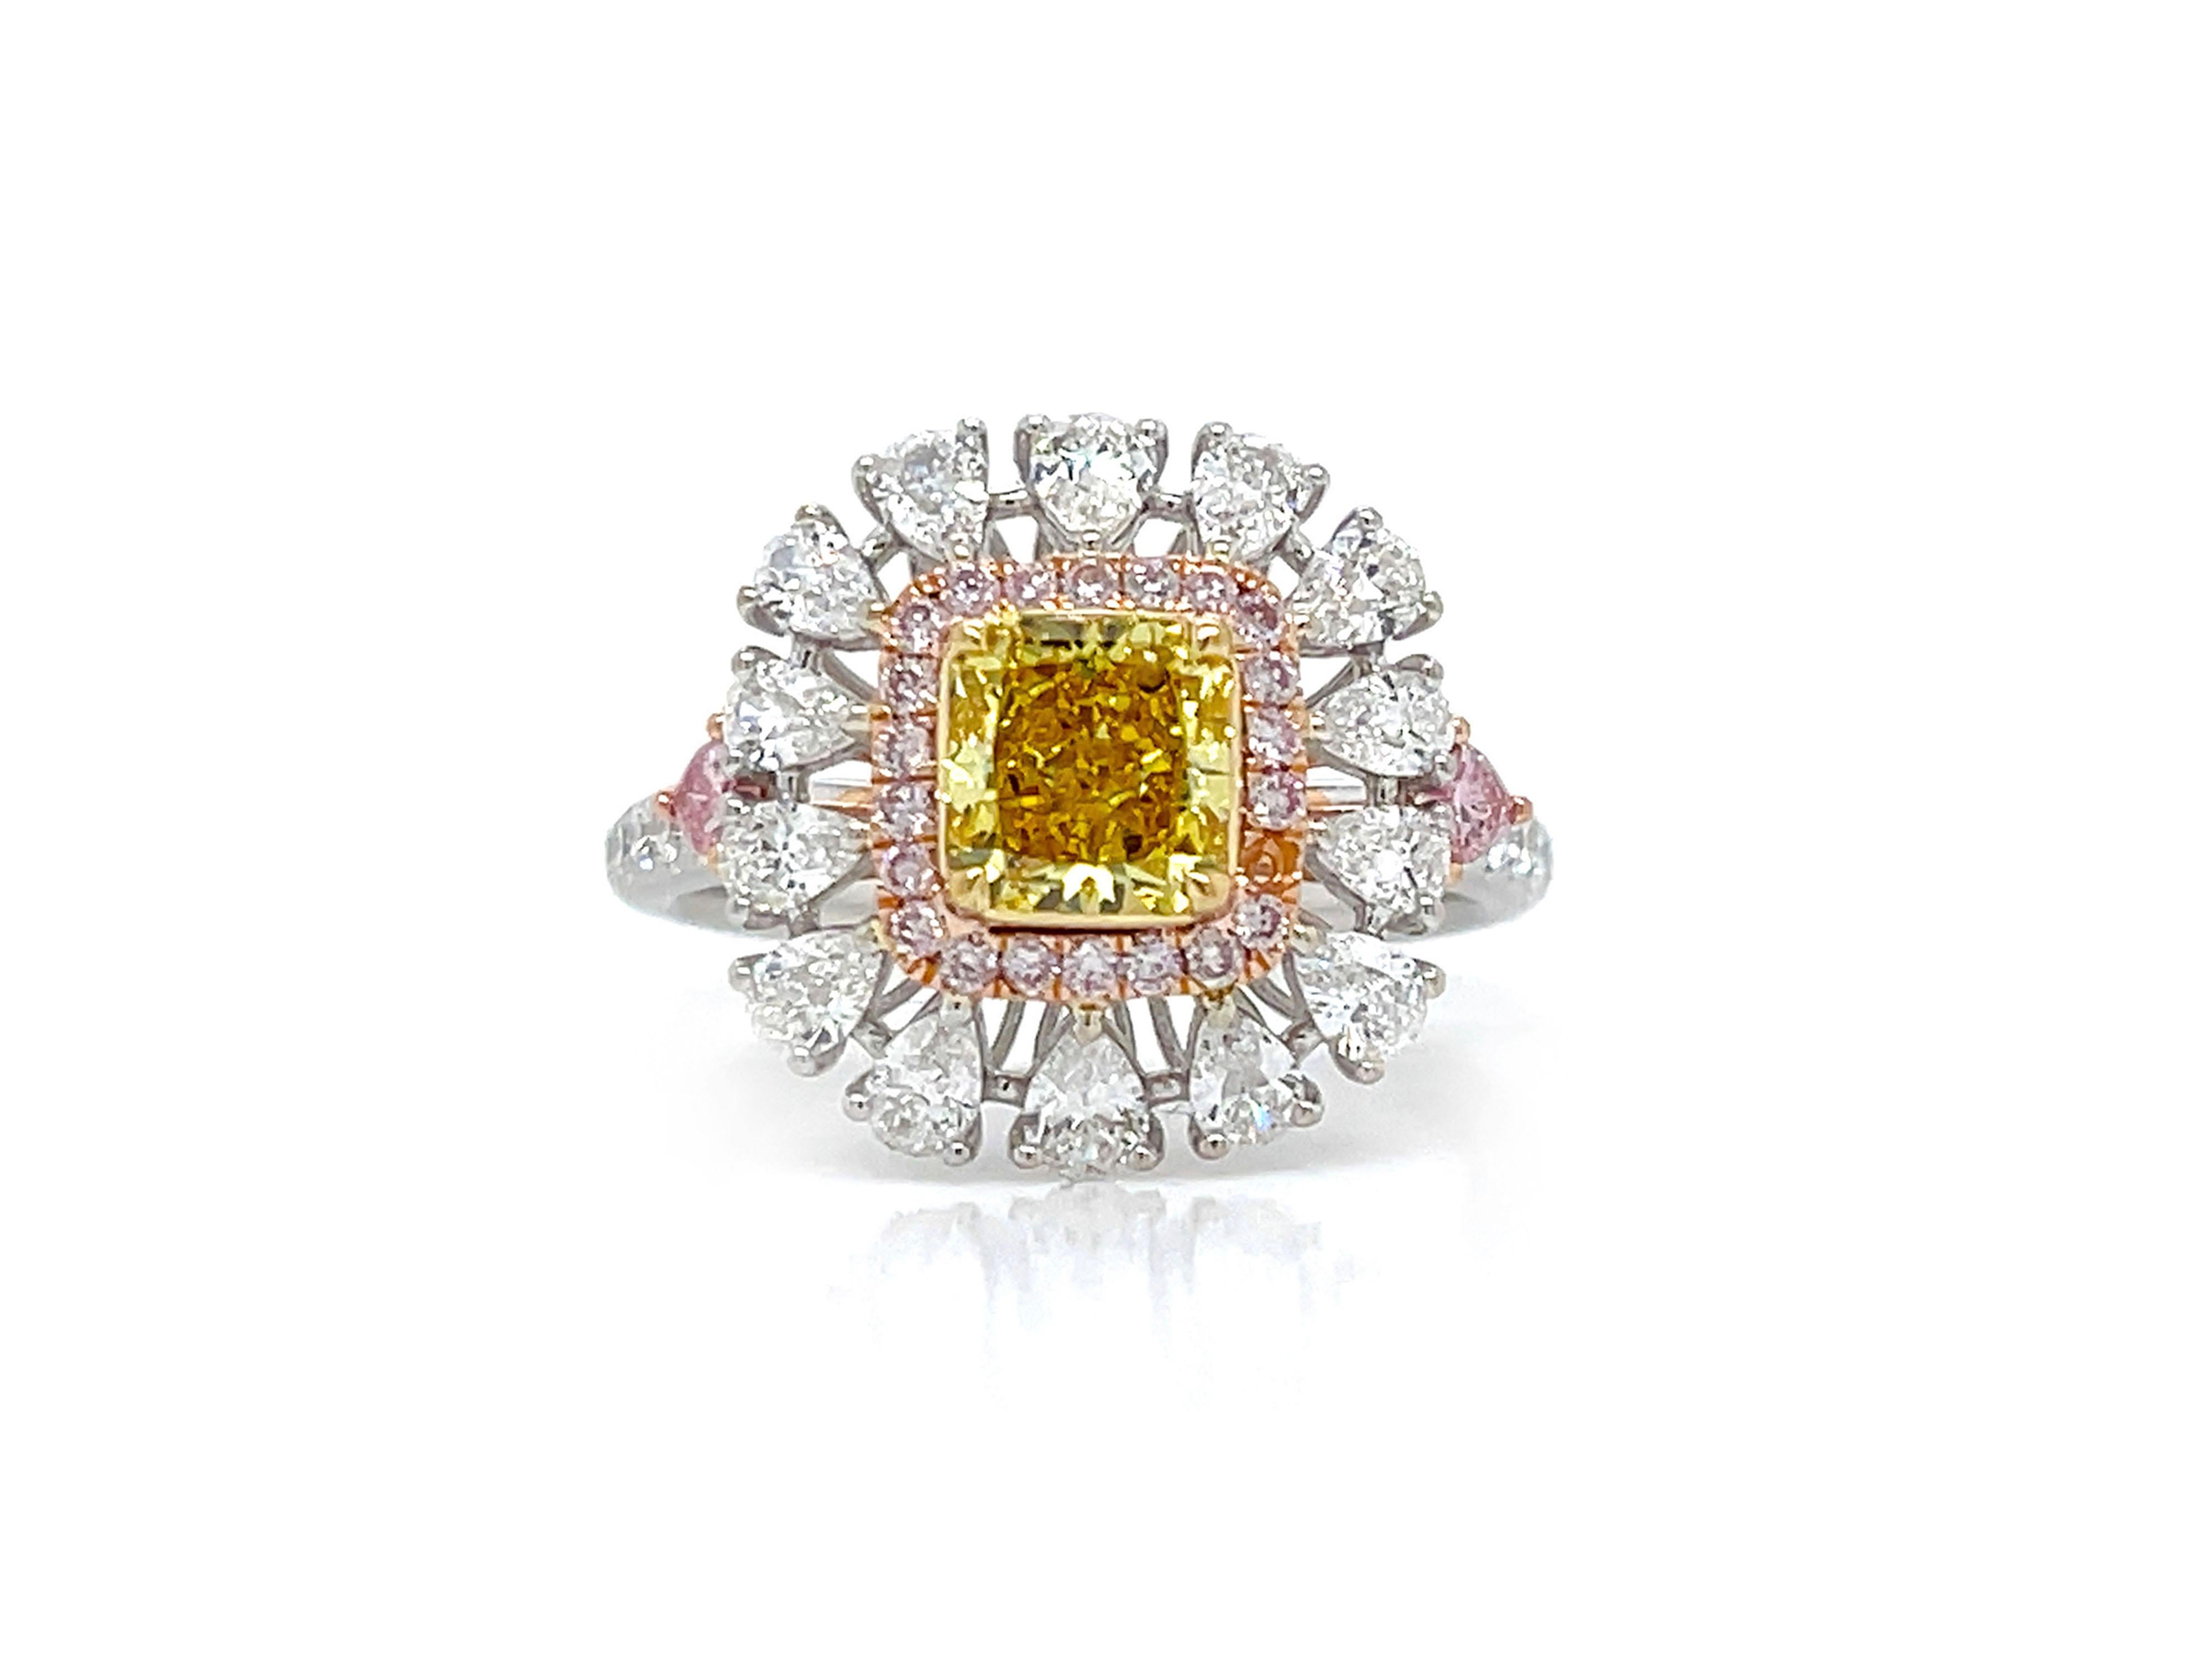 Cette magnifique bague de fiançailles Cocktail met en valeur un diamant radiant de 1,02 carat de couleur jaune vif, certifié VS2 par la GIA. Les accents colorés de 0,12 carat de couleur rose vif en forme de cœur sur les côtés offrent une touche